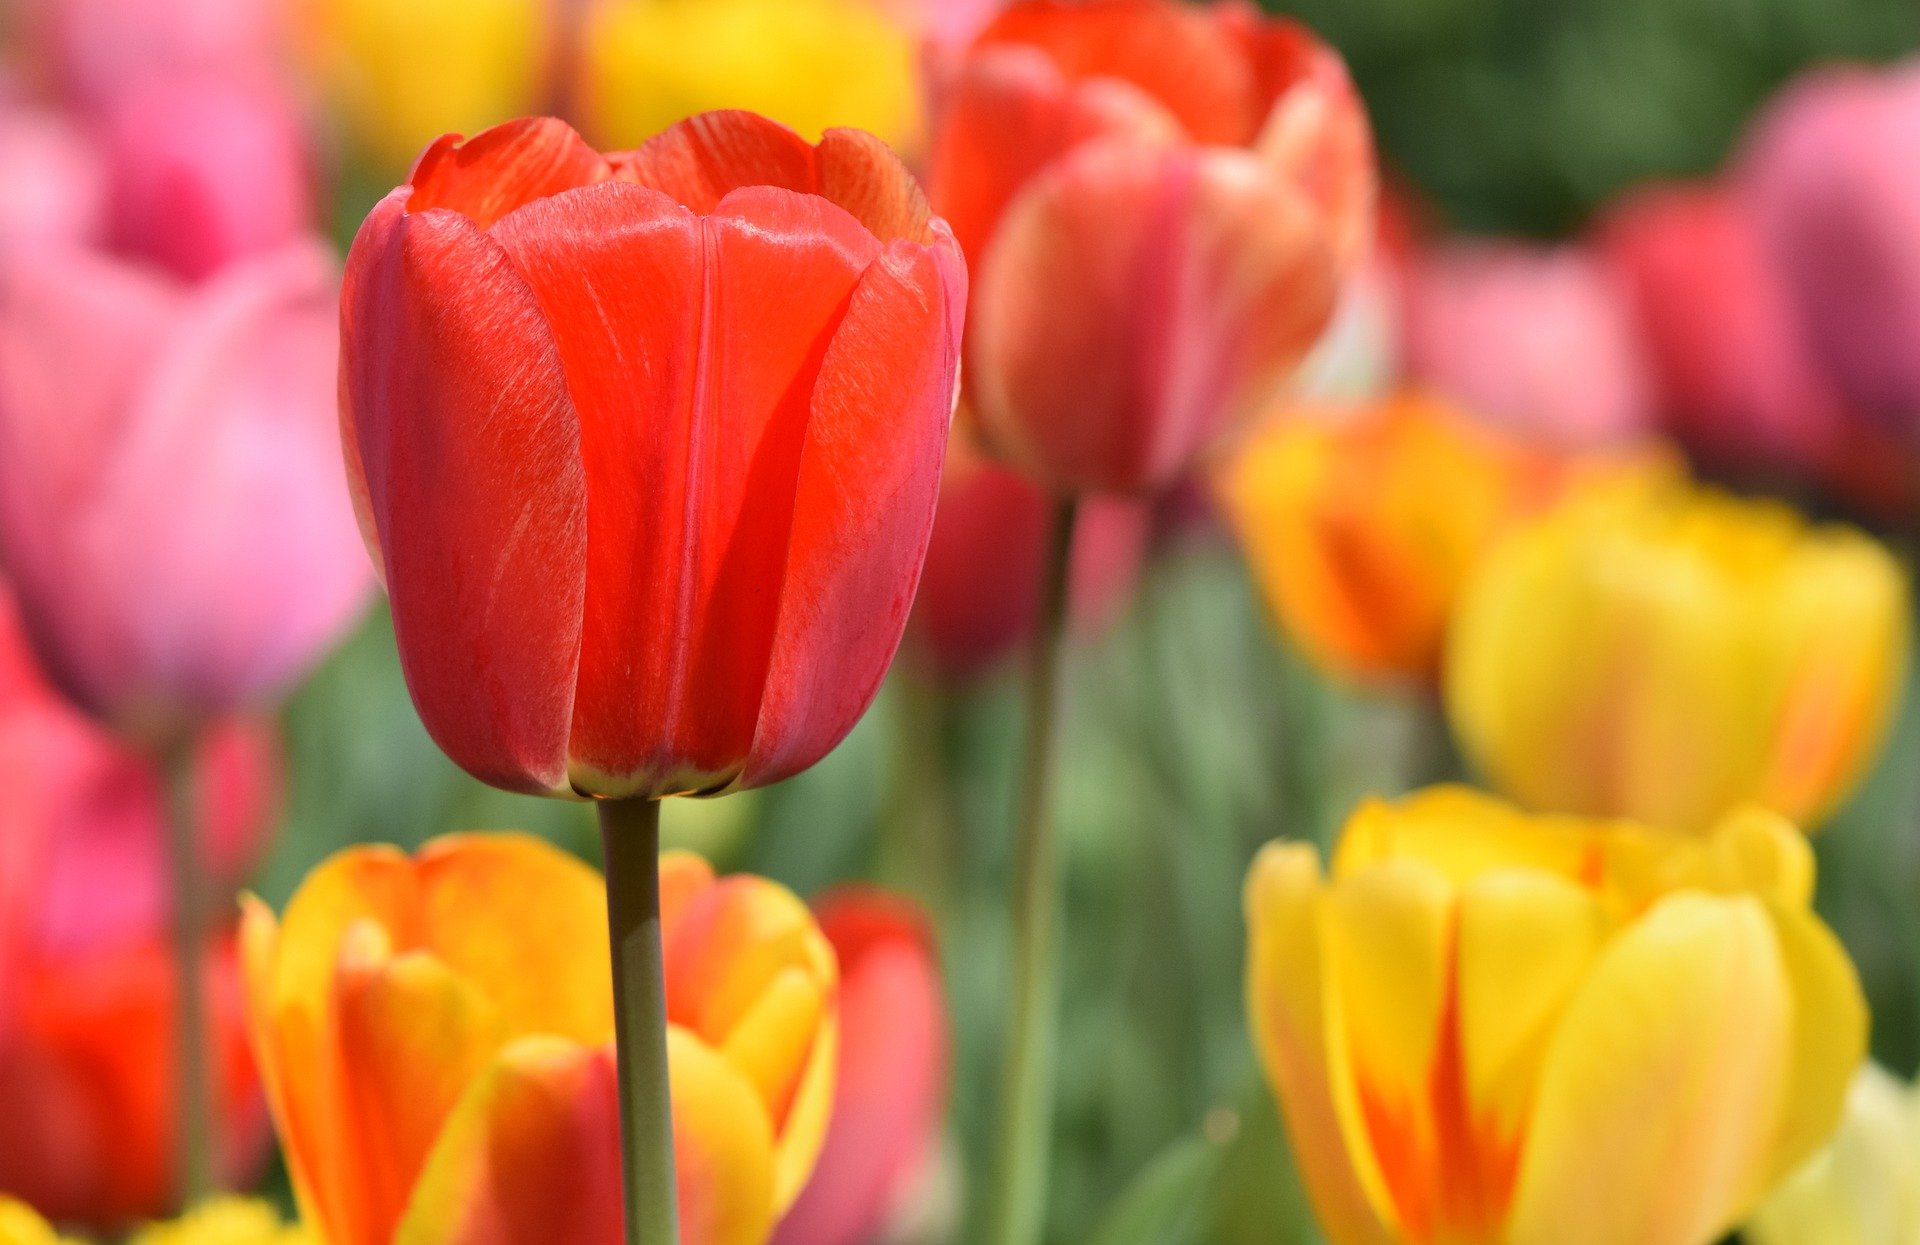 Tulips multicolored